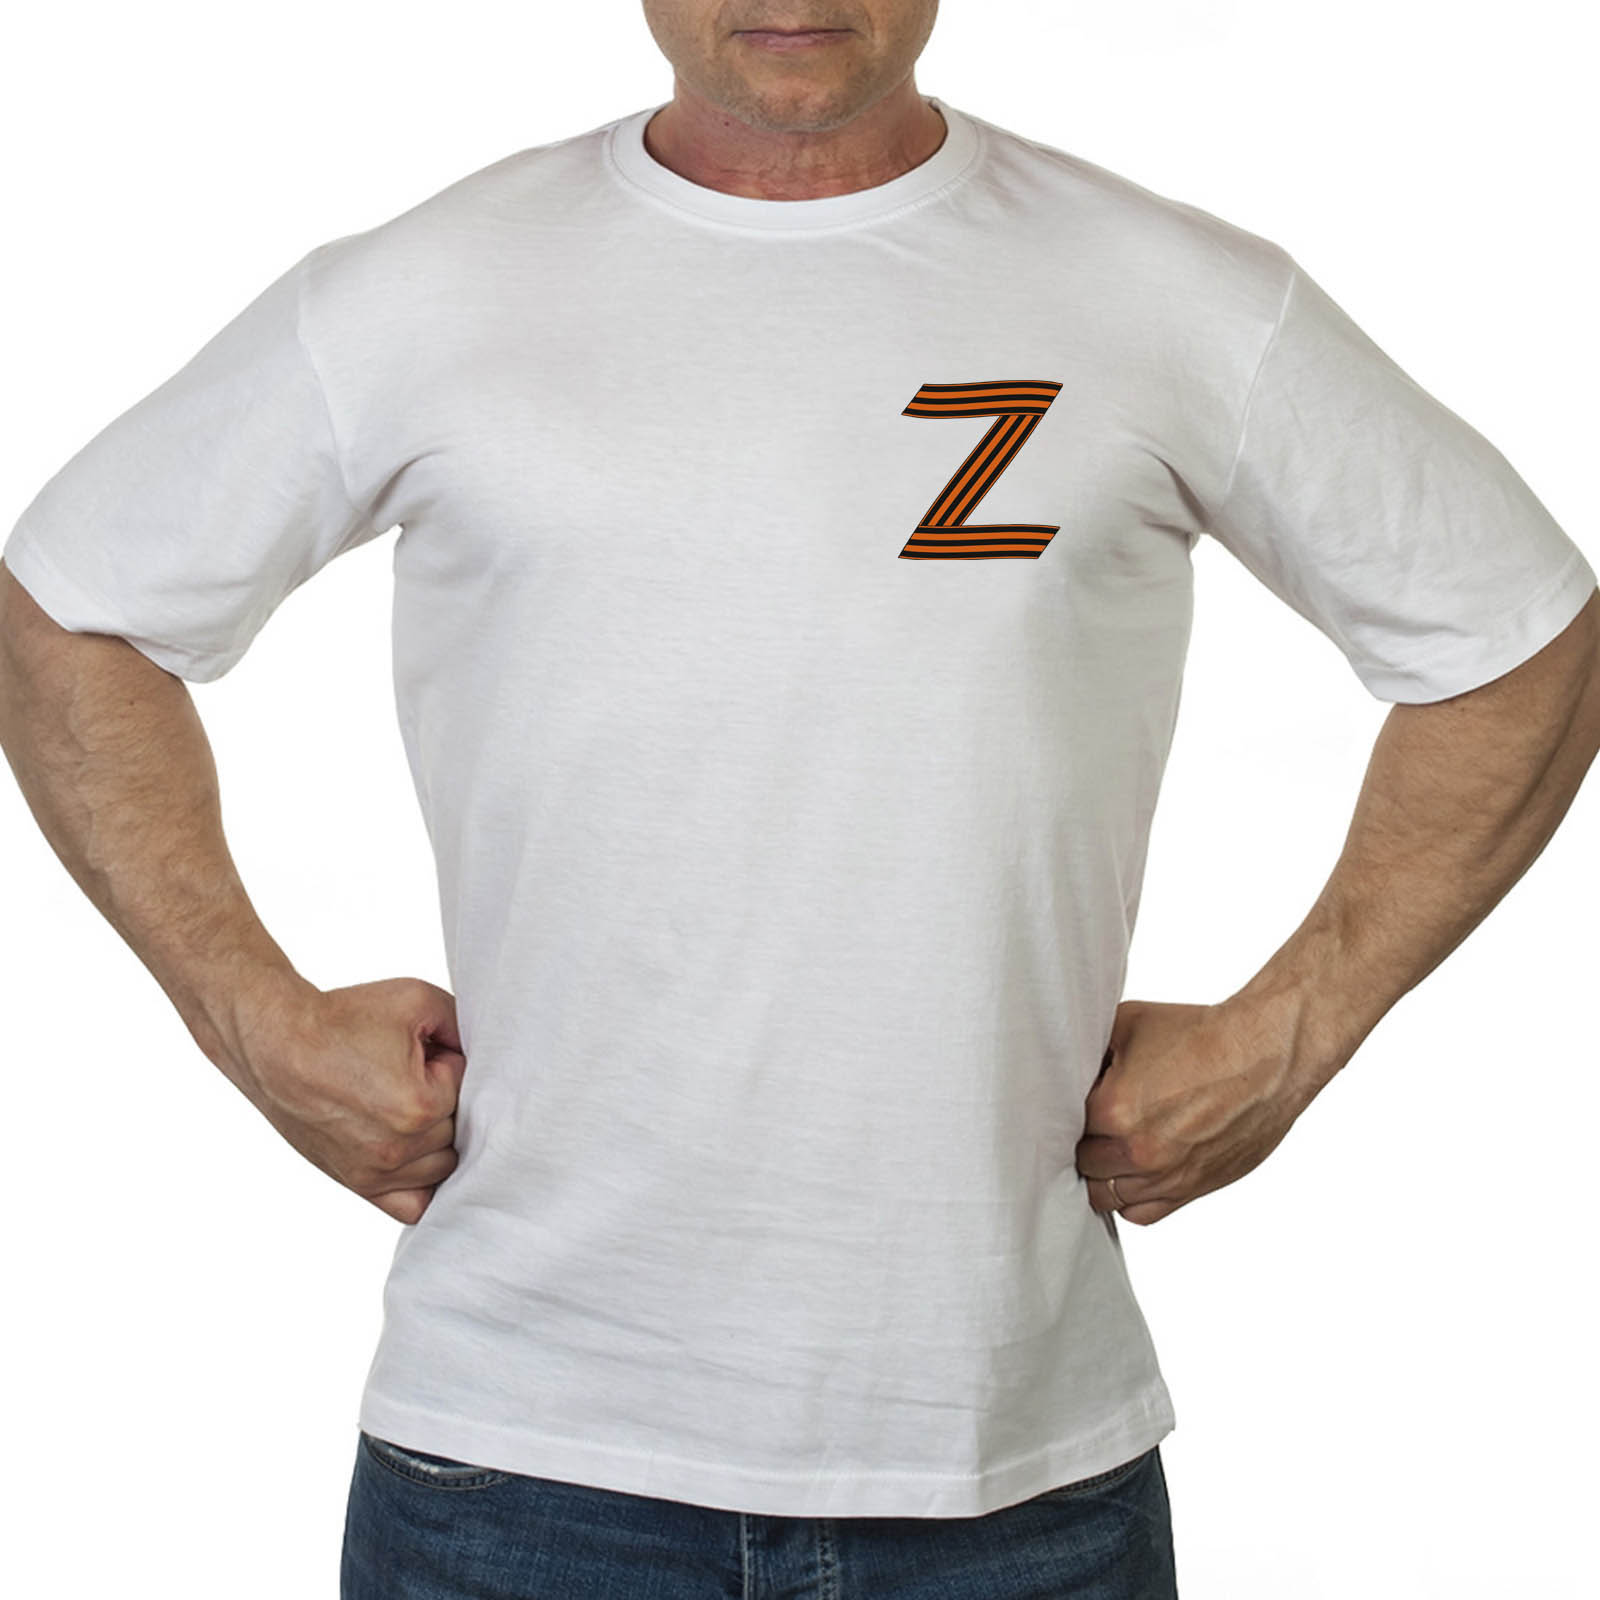 Мужская футболка с символикой Z Армия России